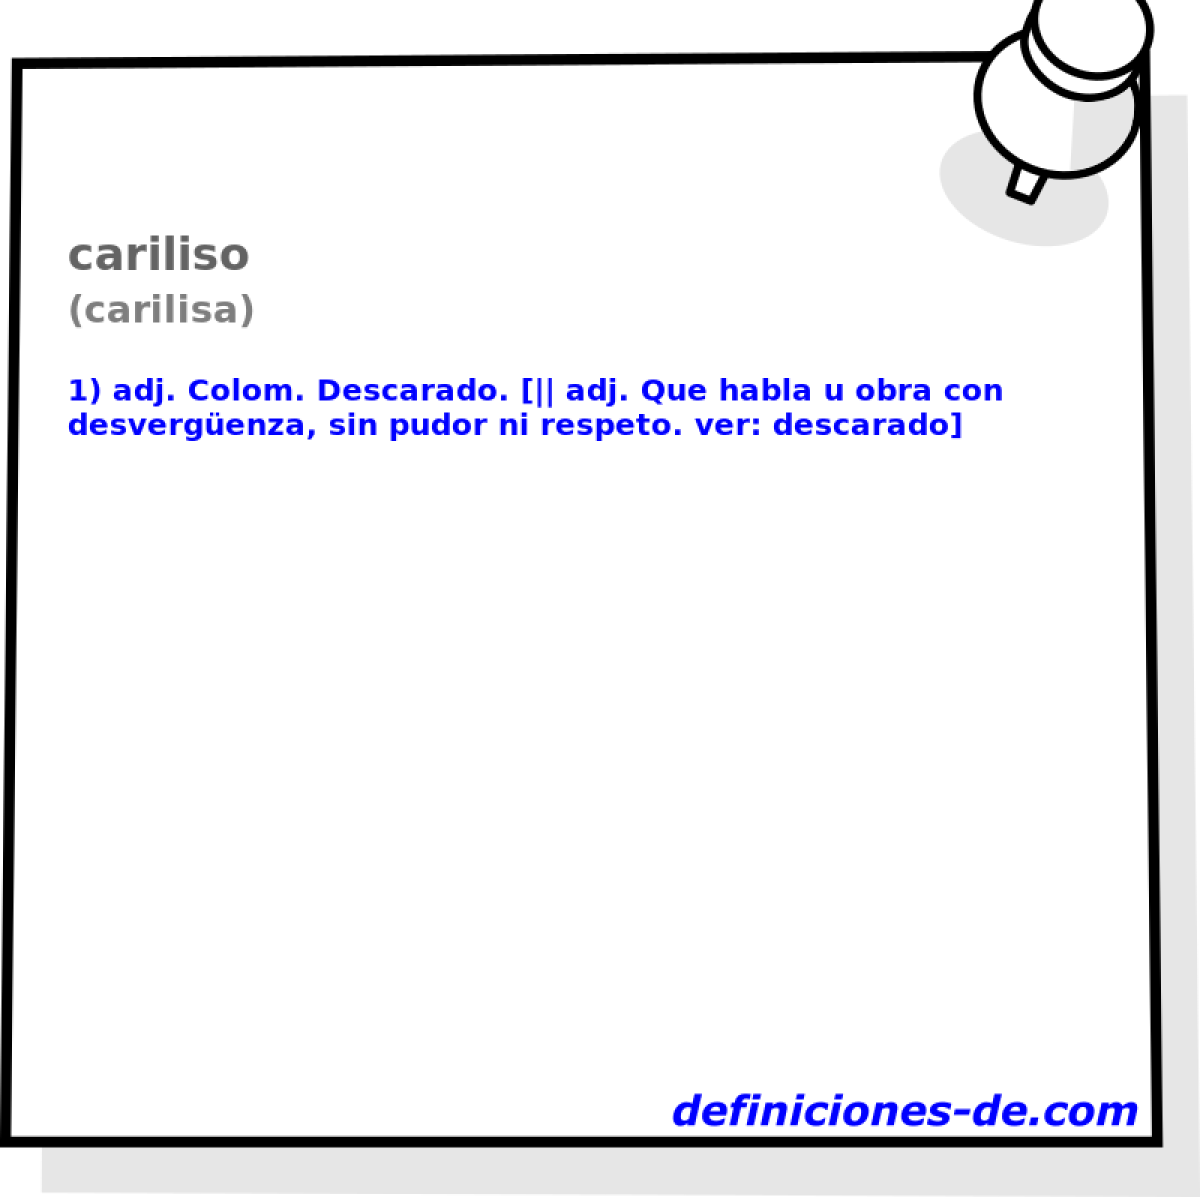 cariliso (carilisa)